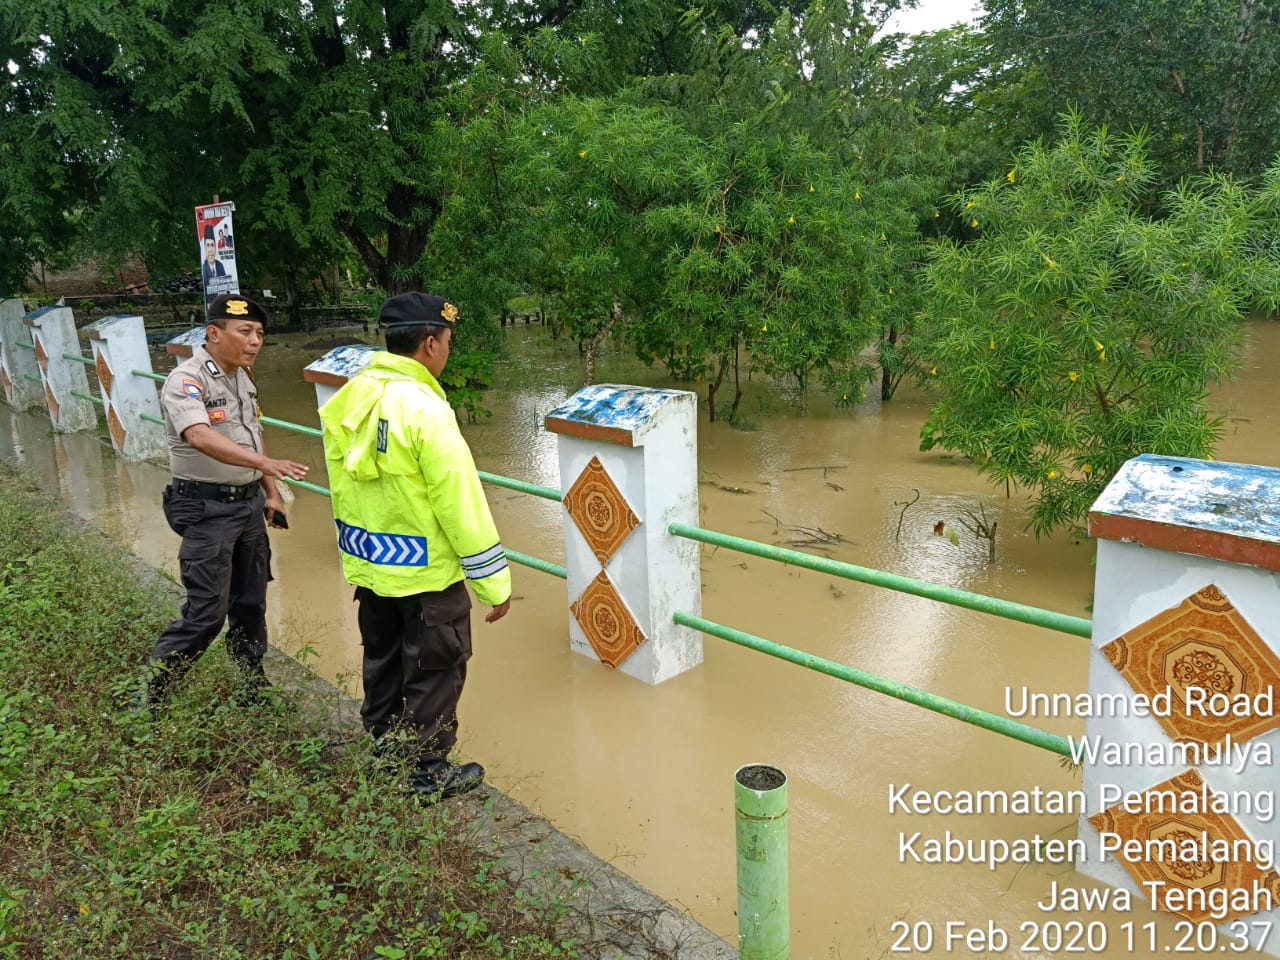 Waspada Banjir, Kapolsek Pemalang Cek langsung Ketinggian Debit Air Sungai Kali Rambut